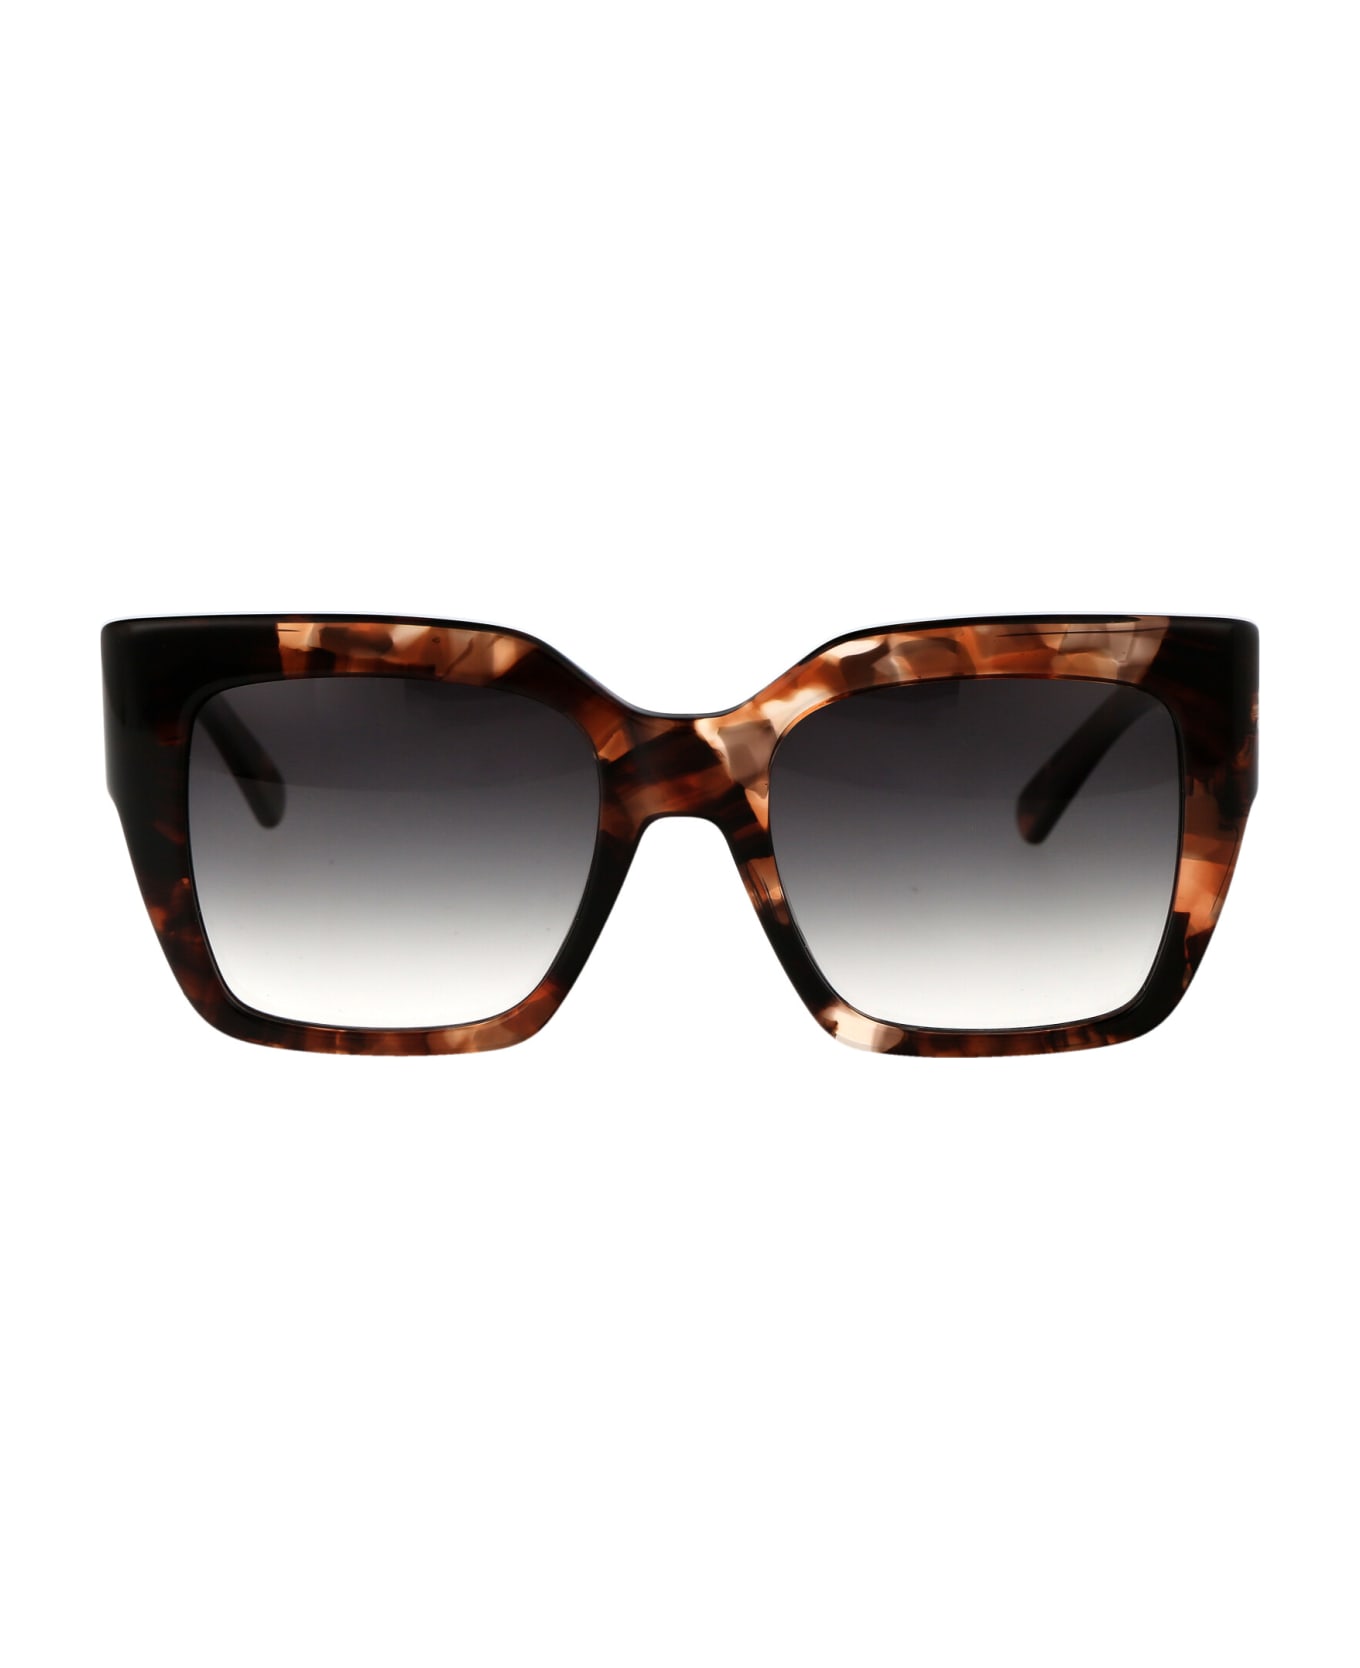 Longchamp Lo734s Sunglasses - 230 HAVANA